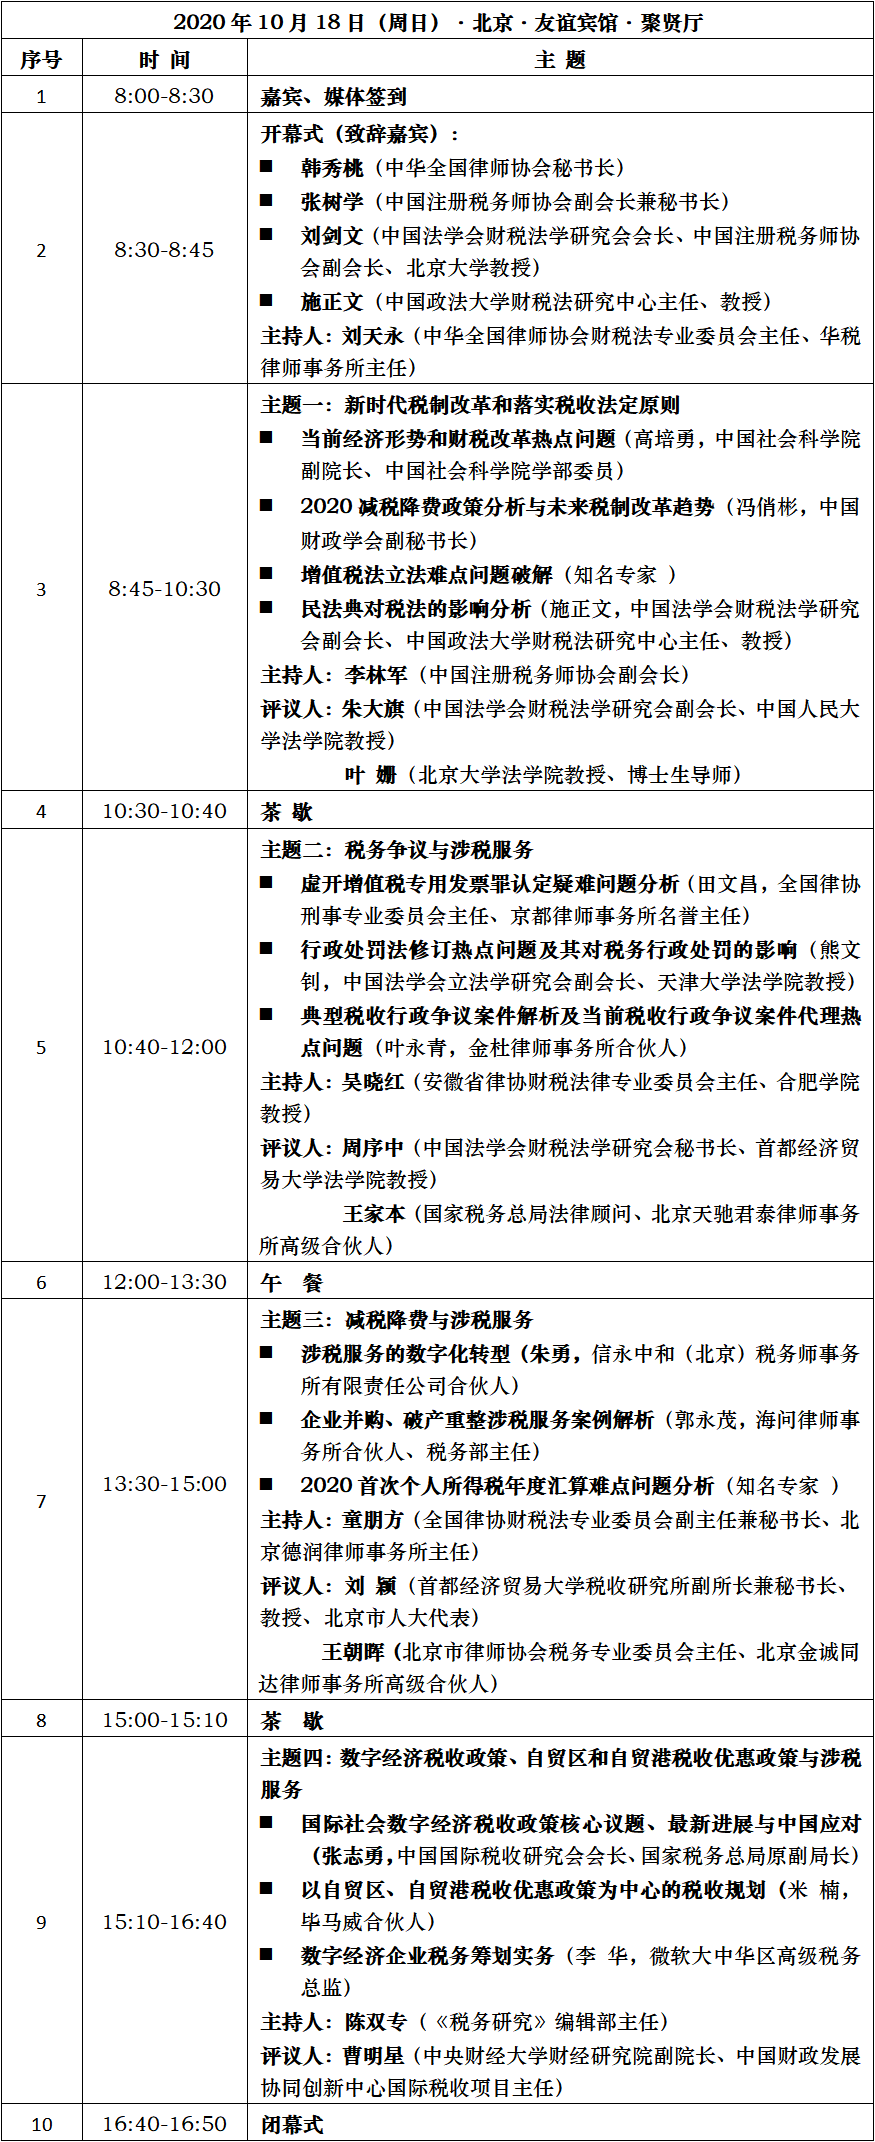 2020中国税法论坛议程